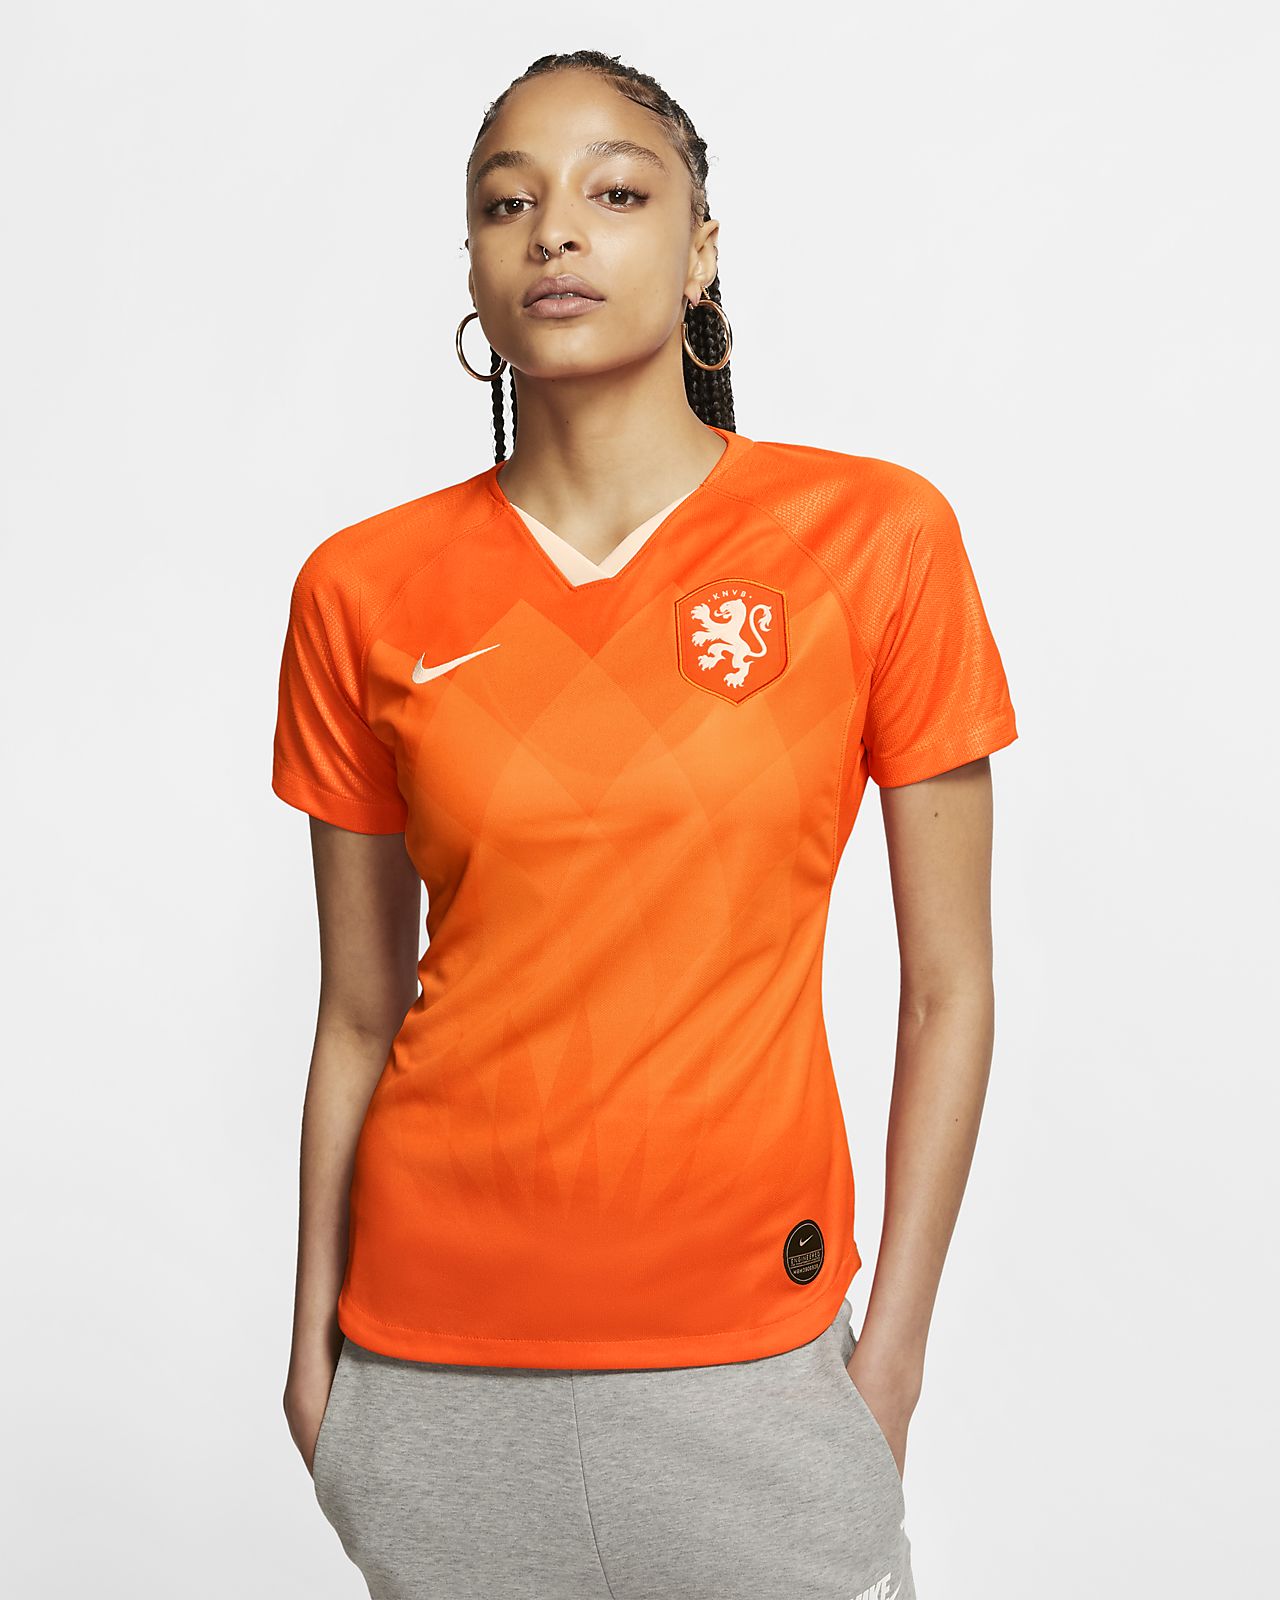 netherlands women's jersey